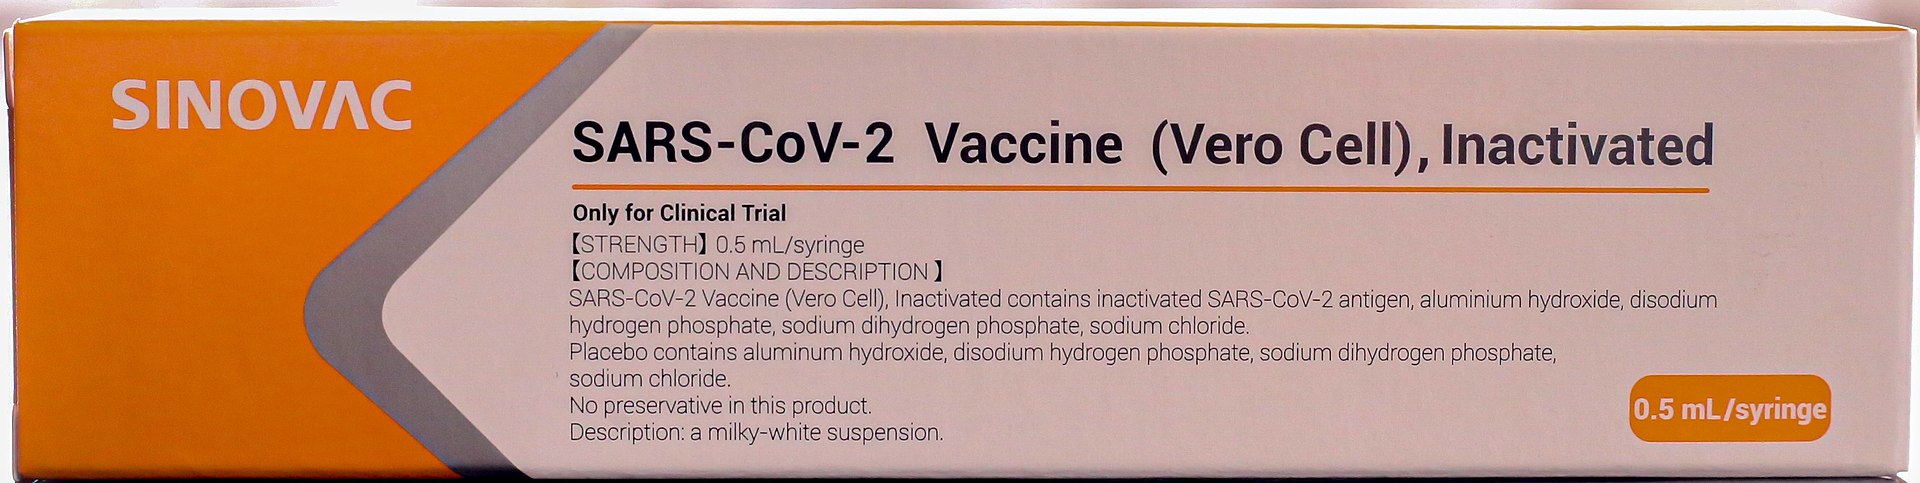 Información sobre la vacuna CoronaVac Covid-19 de China